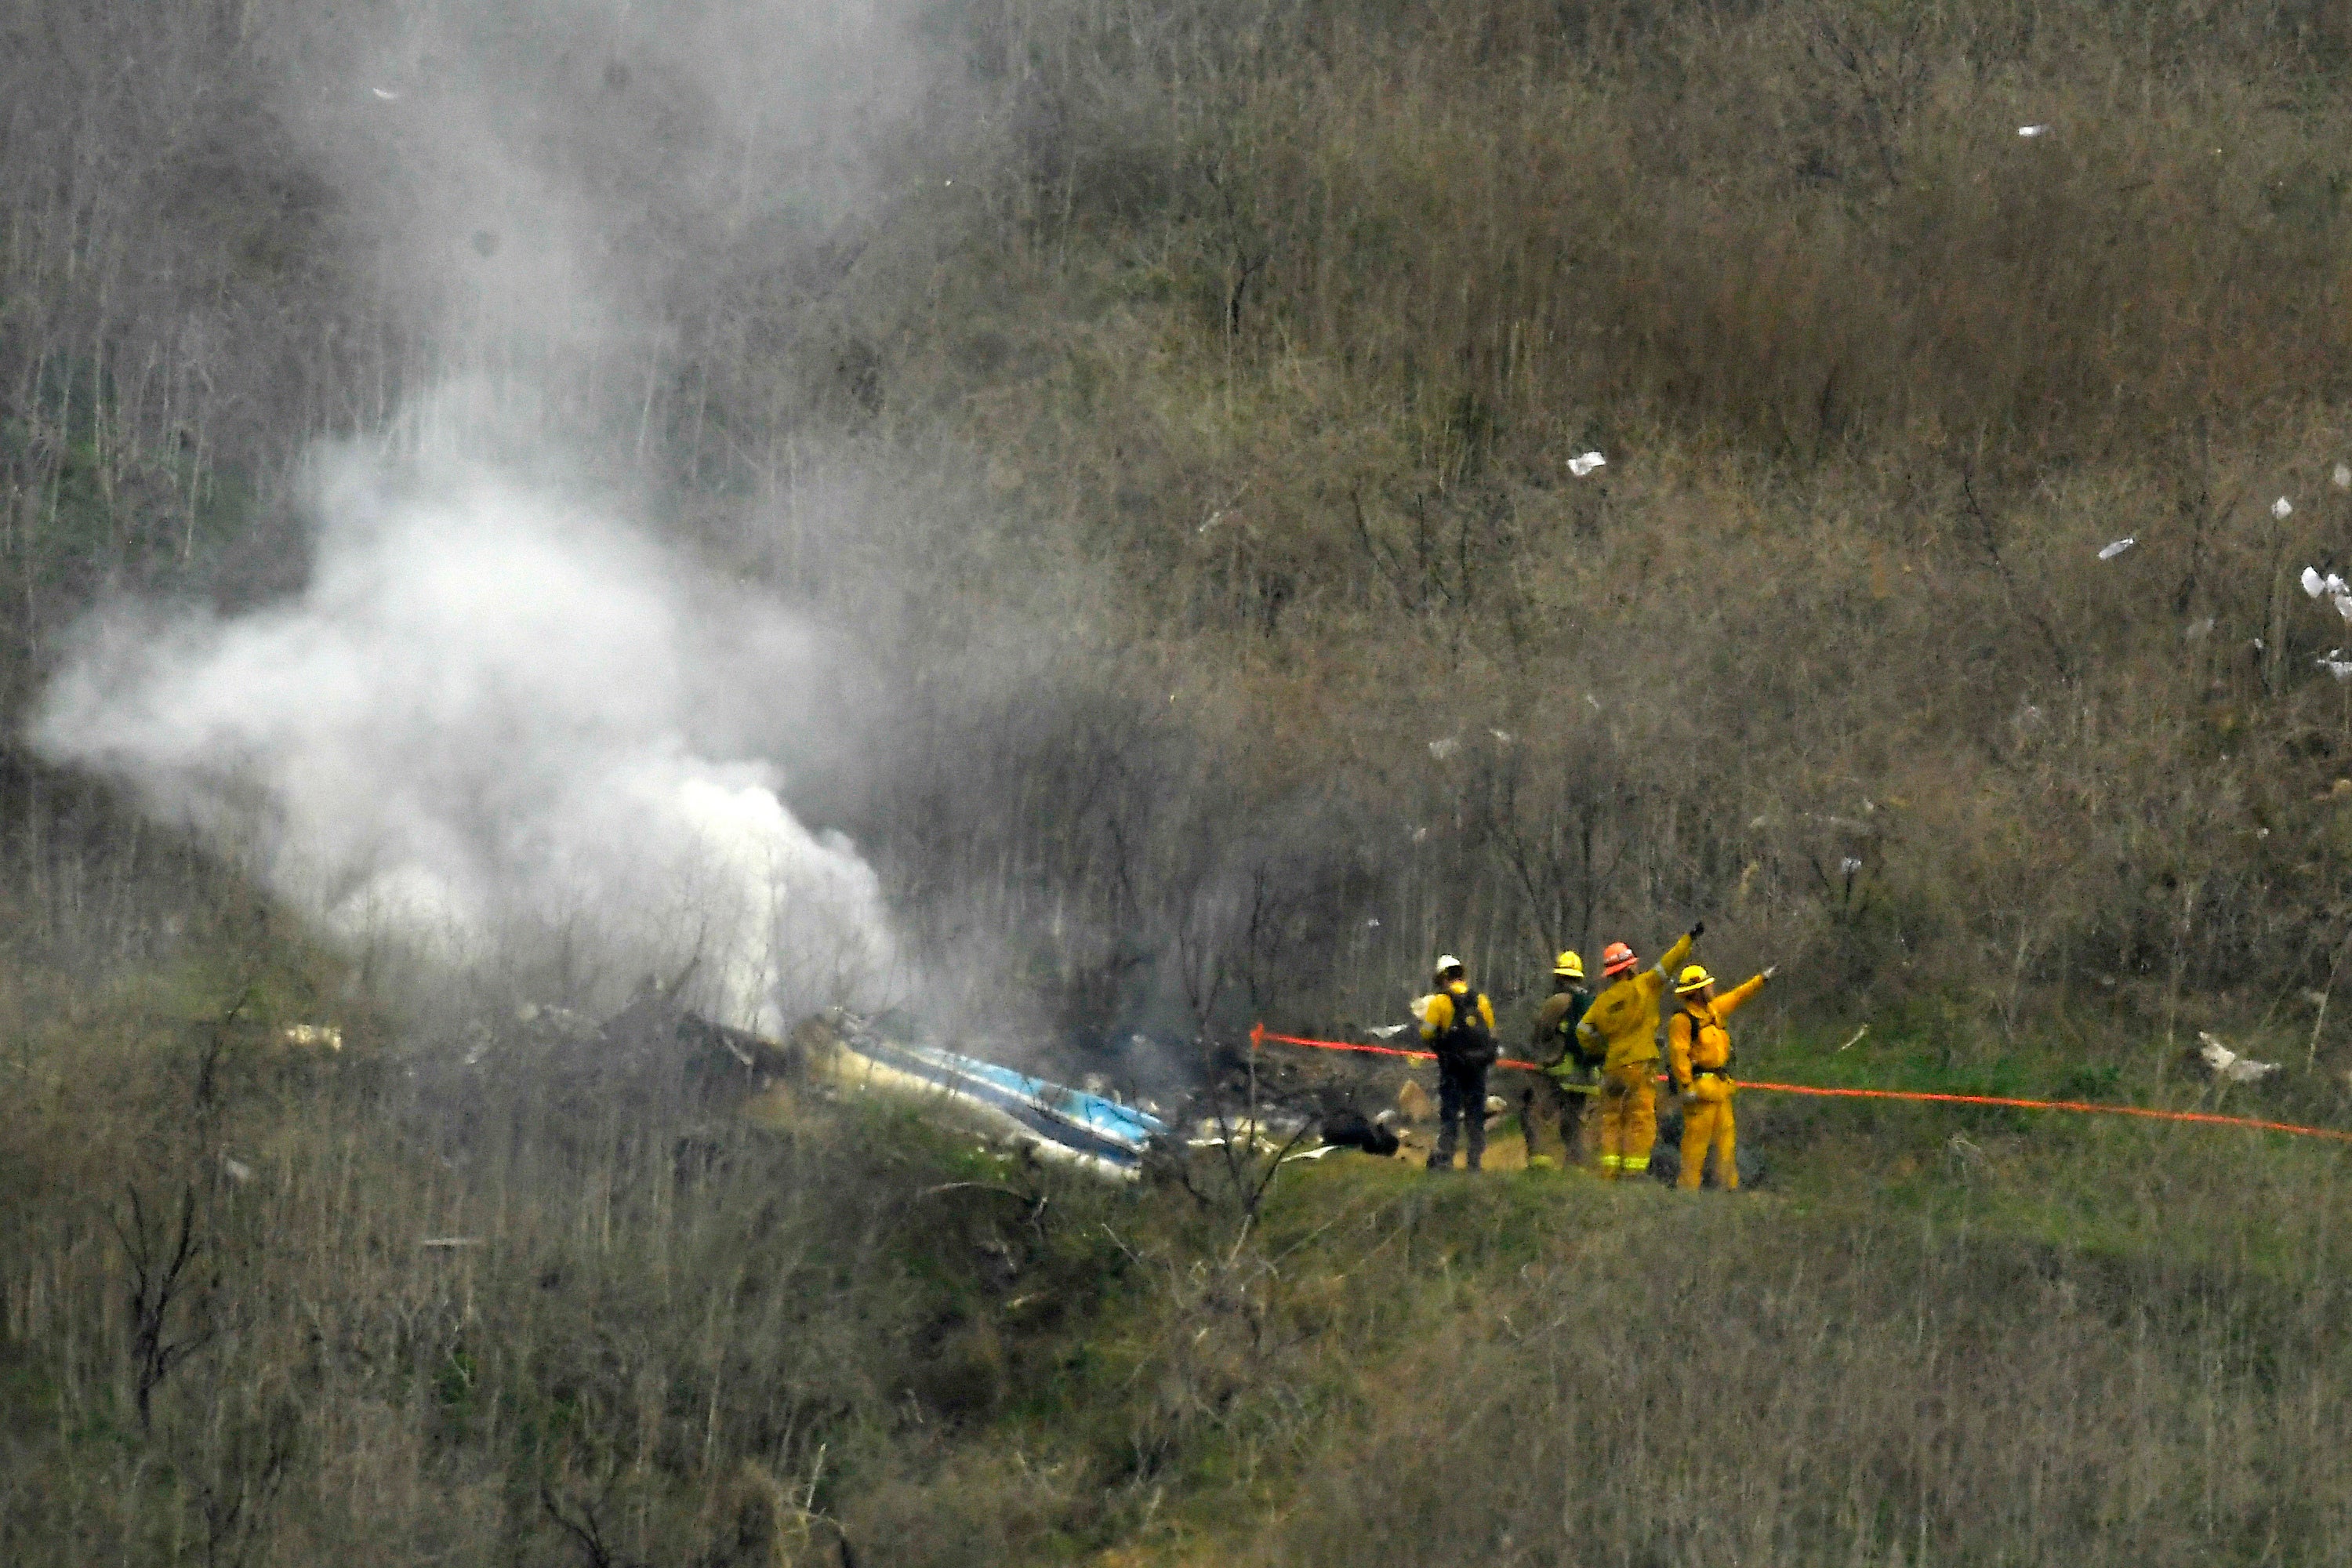 Los bomberos trabajan en el lugar del accidente del helicóptero